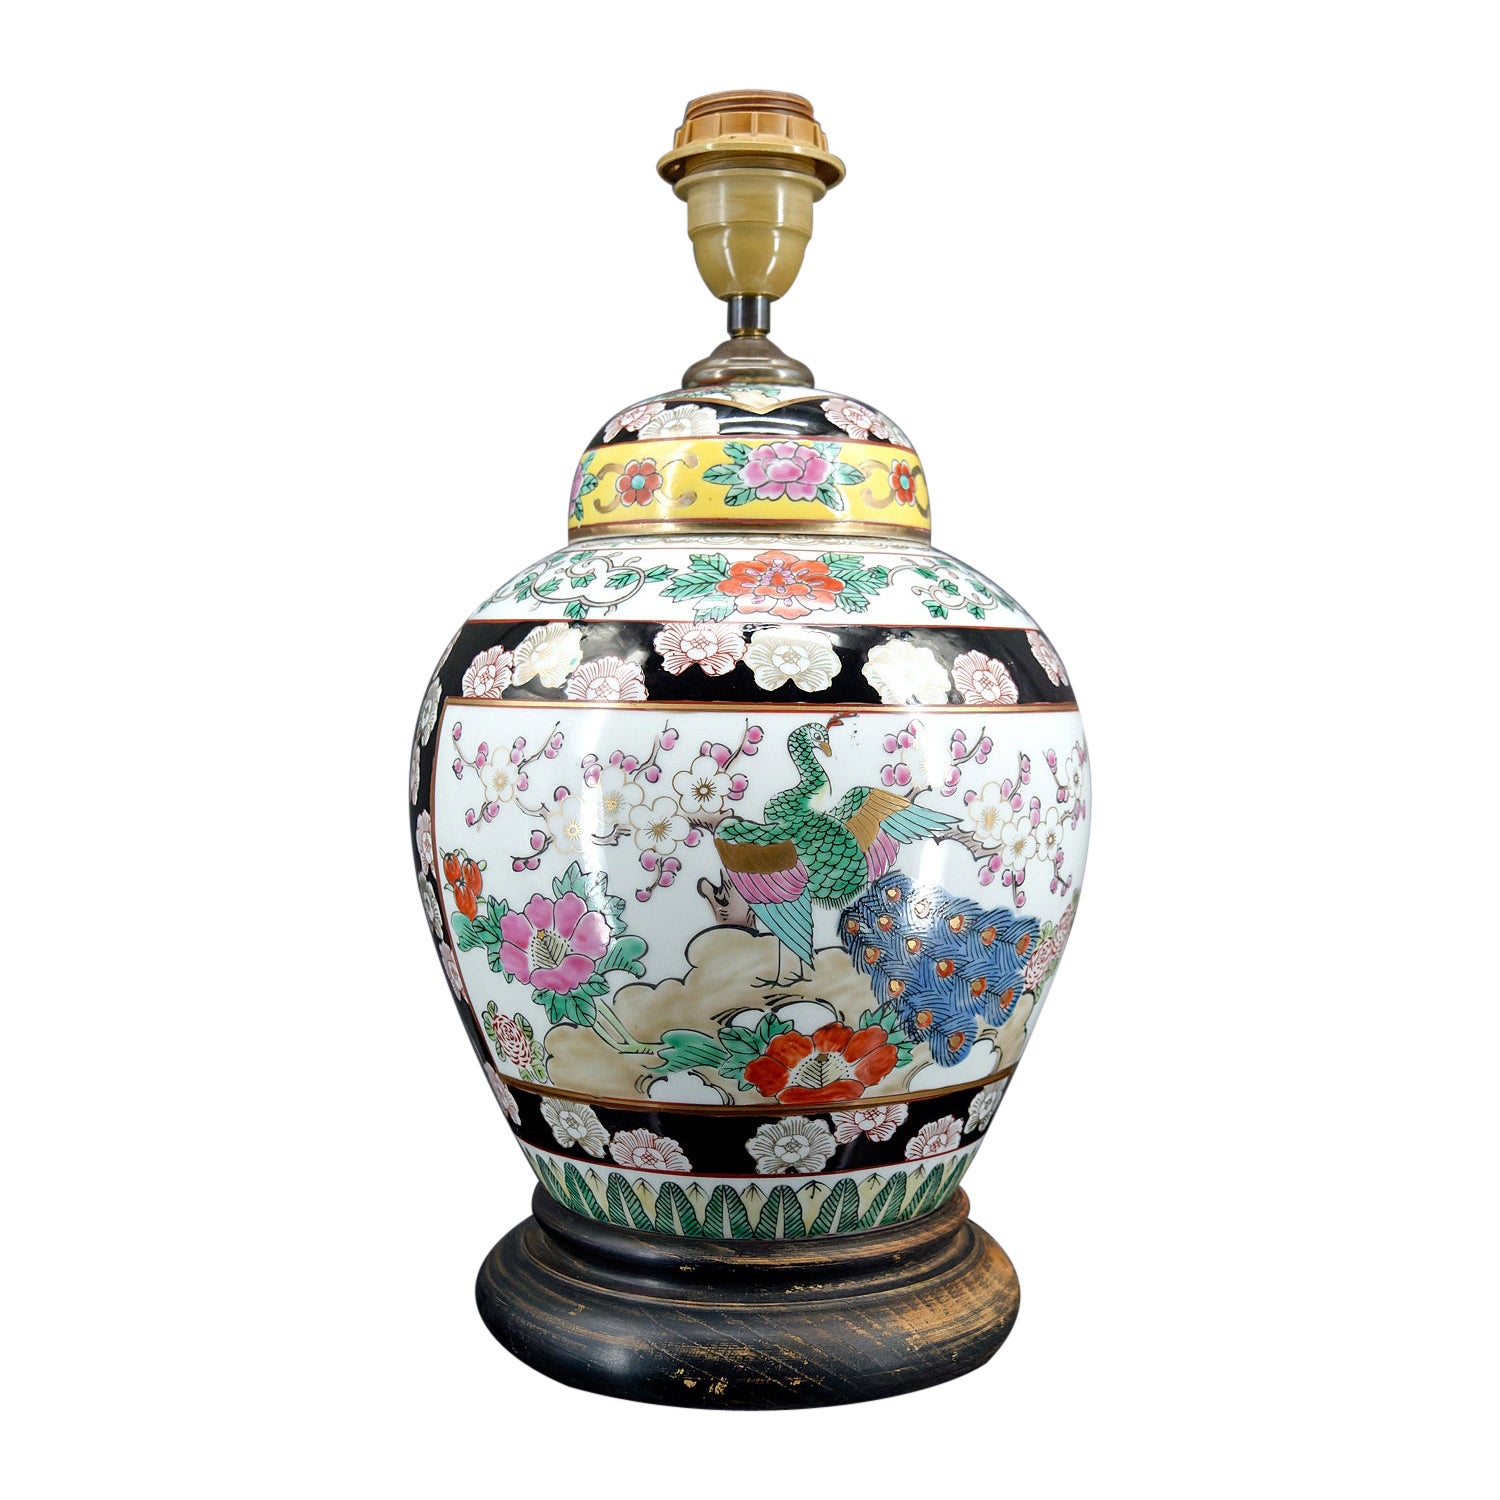 Lampe en porcelaine chinoise décorée de fleurs et de paons, Chine, début du 20e siècle